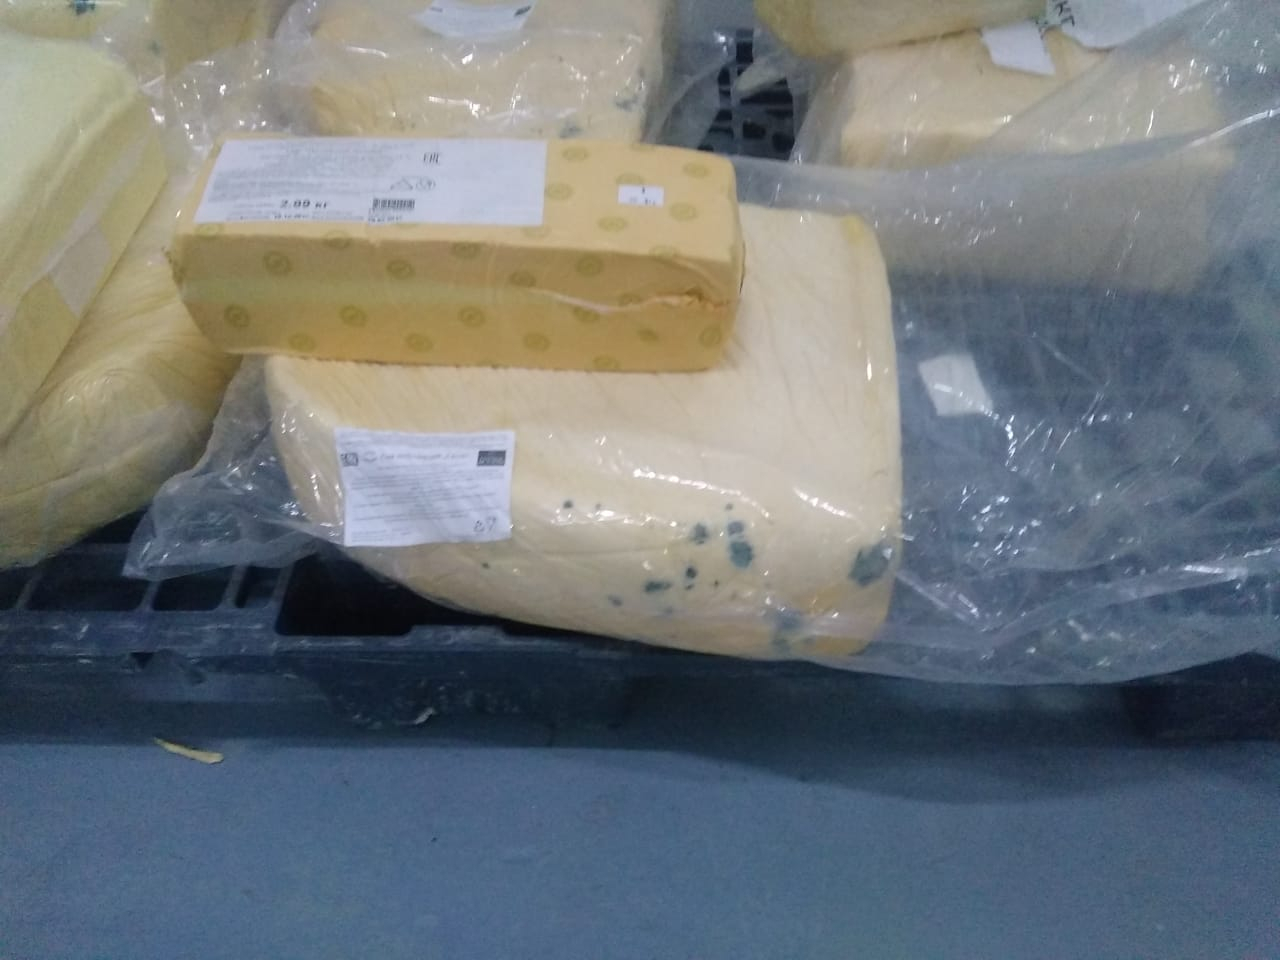 Сыр с кишечной палочкой может попасть на прилавки магазинов Владимира